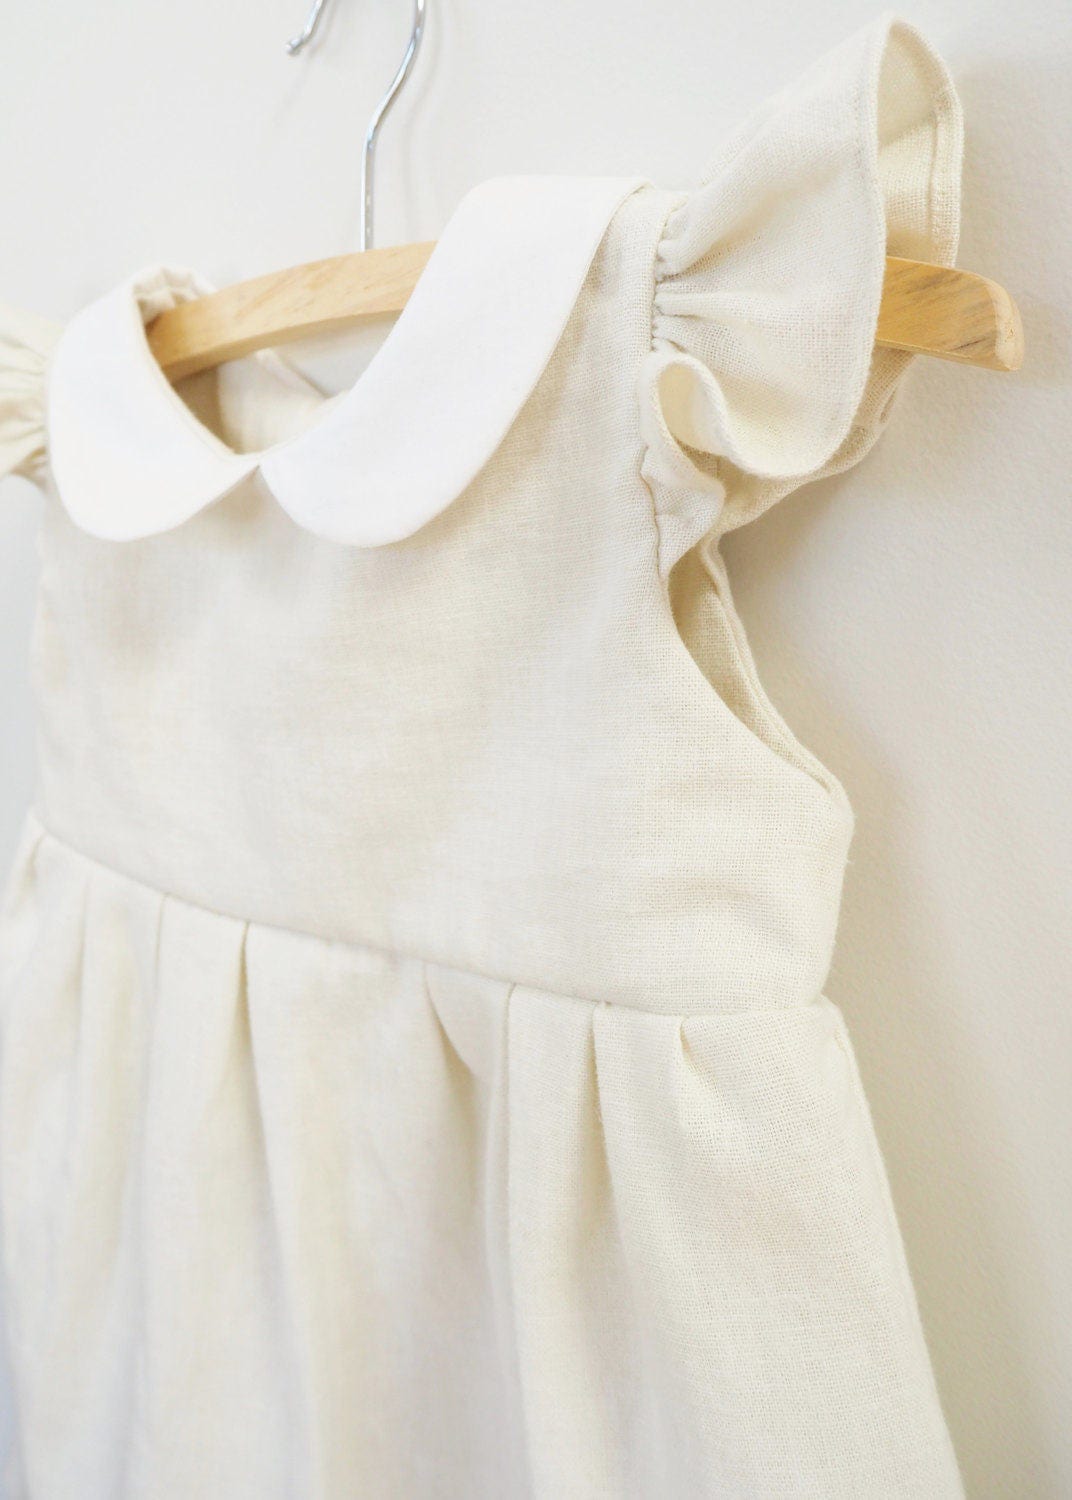 Off White Baby Dress Bloomer Set White Dress Diaper Cover | Etsy